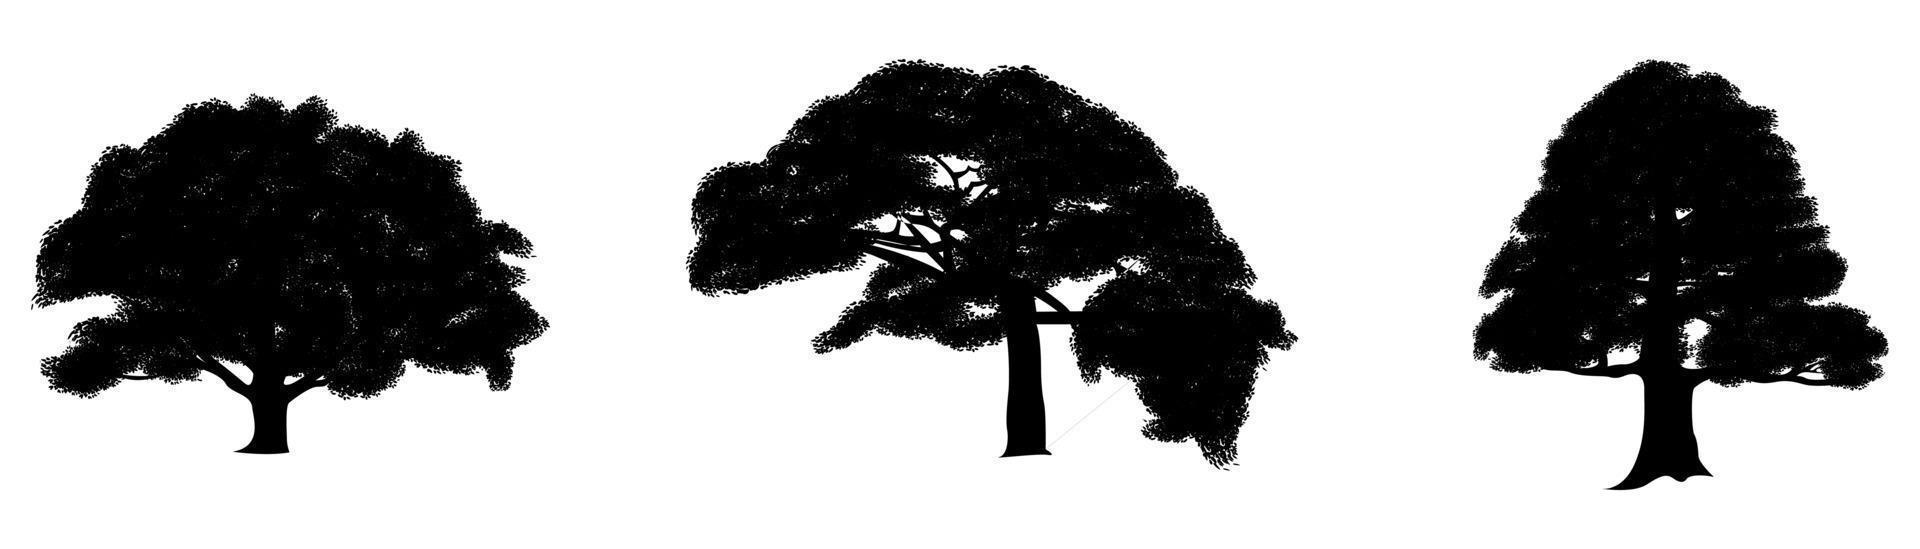 raccolta vettoriale di sagome di alberi su uno sfondo bianco o isolato